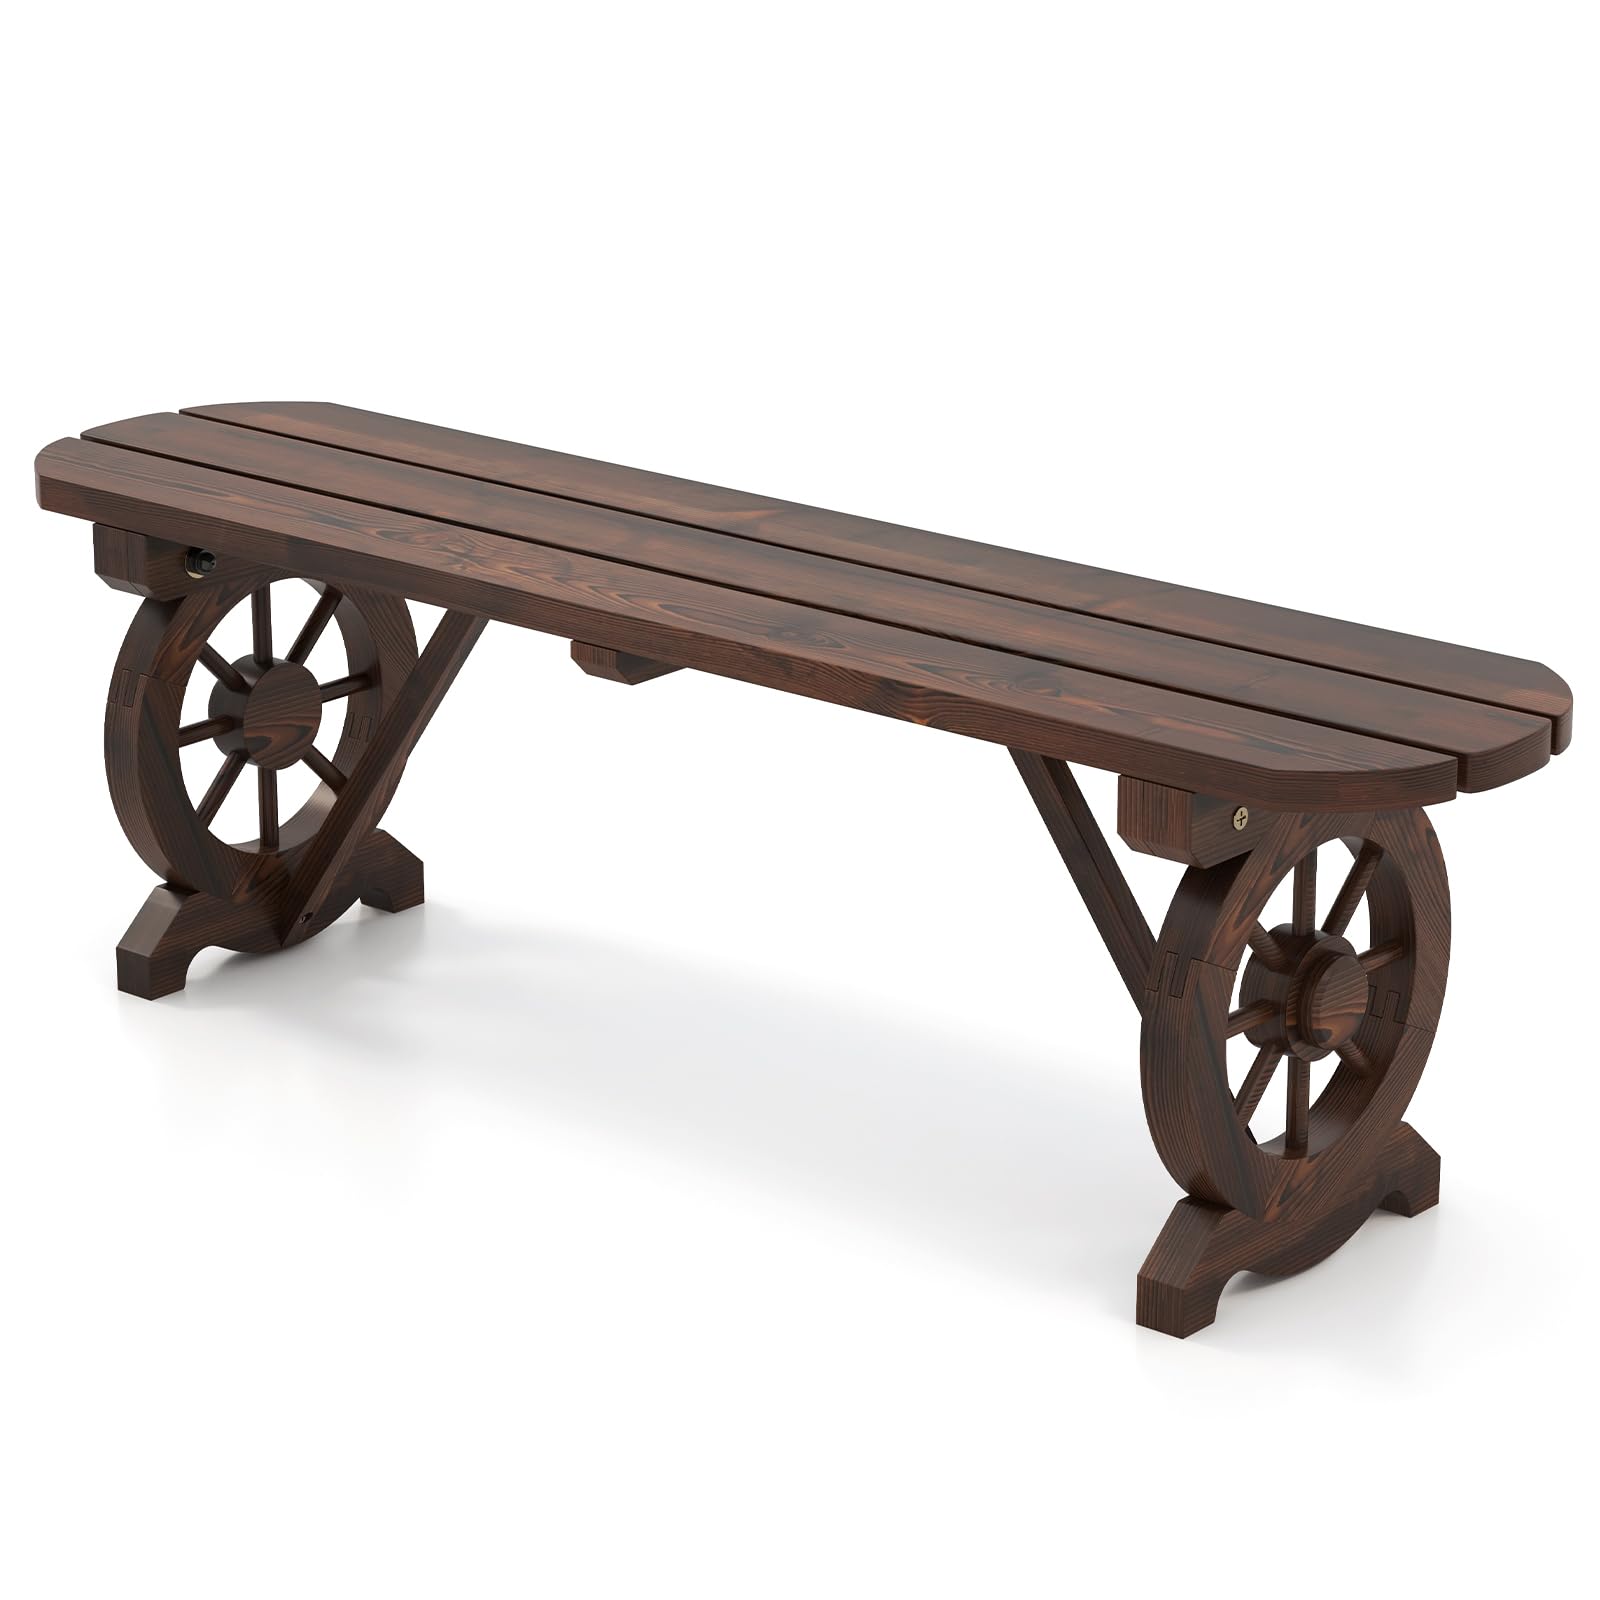 Giantex 2-Person Wooden Outdoor Bench - Patio Bench w/Wagon Wheel Legs